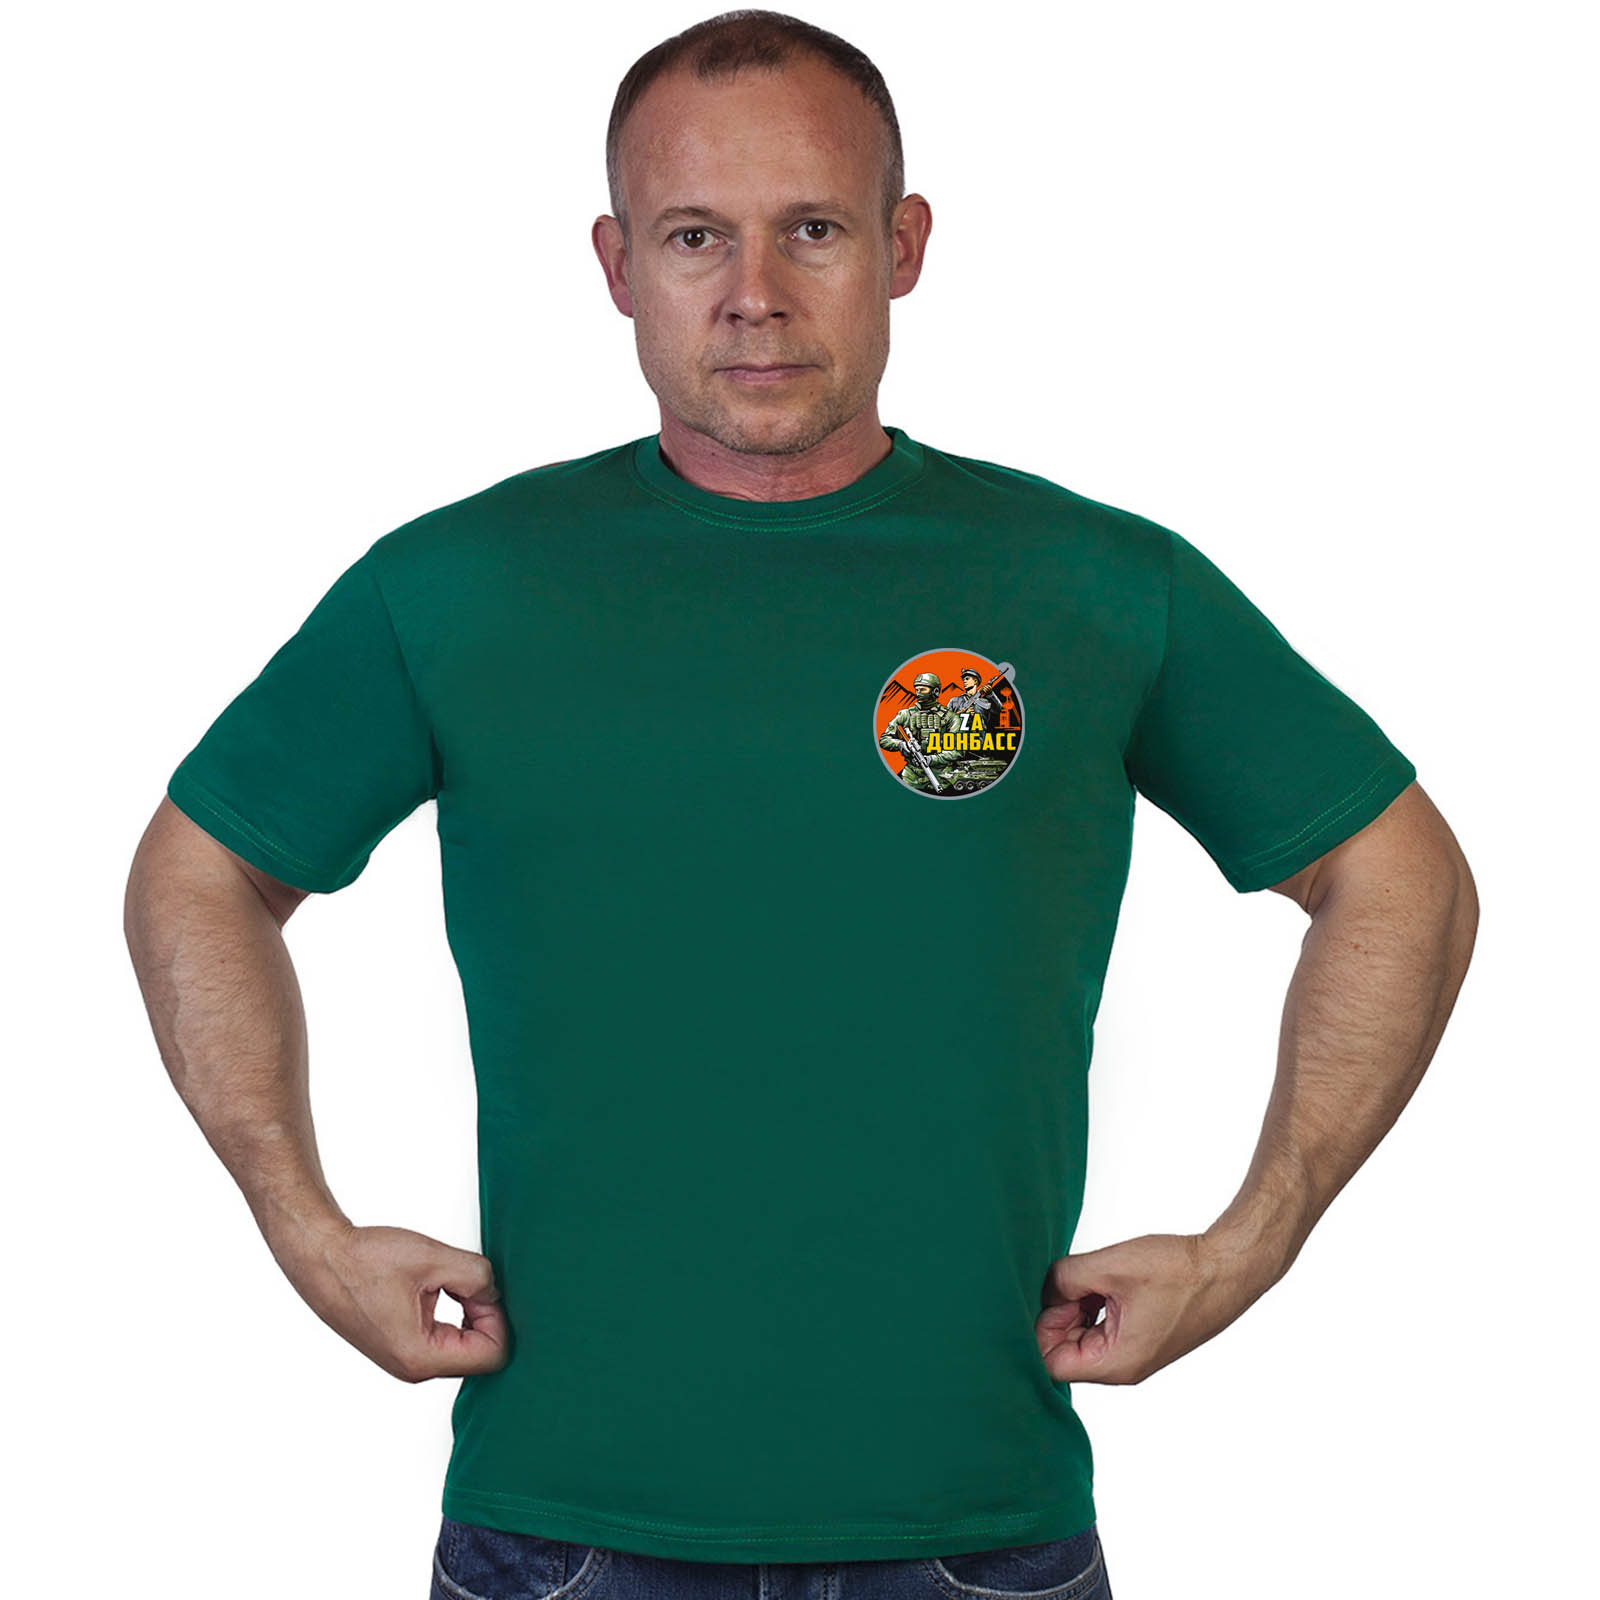 Зелёная футболка с трансфером "Zа Донбасс"